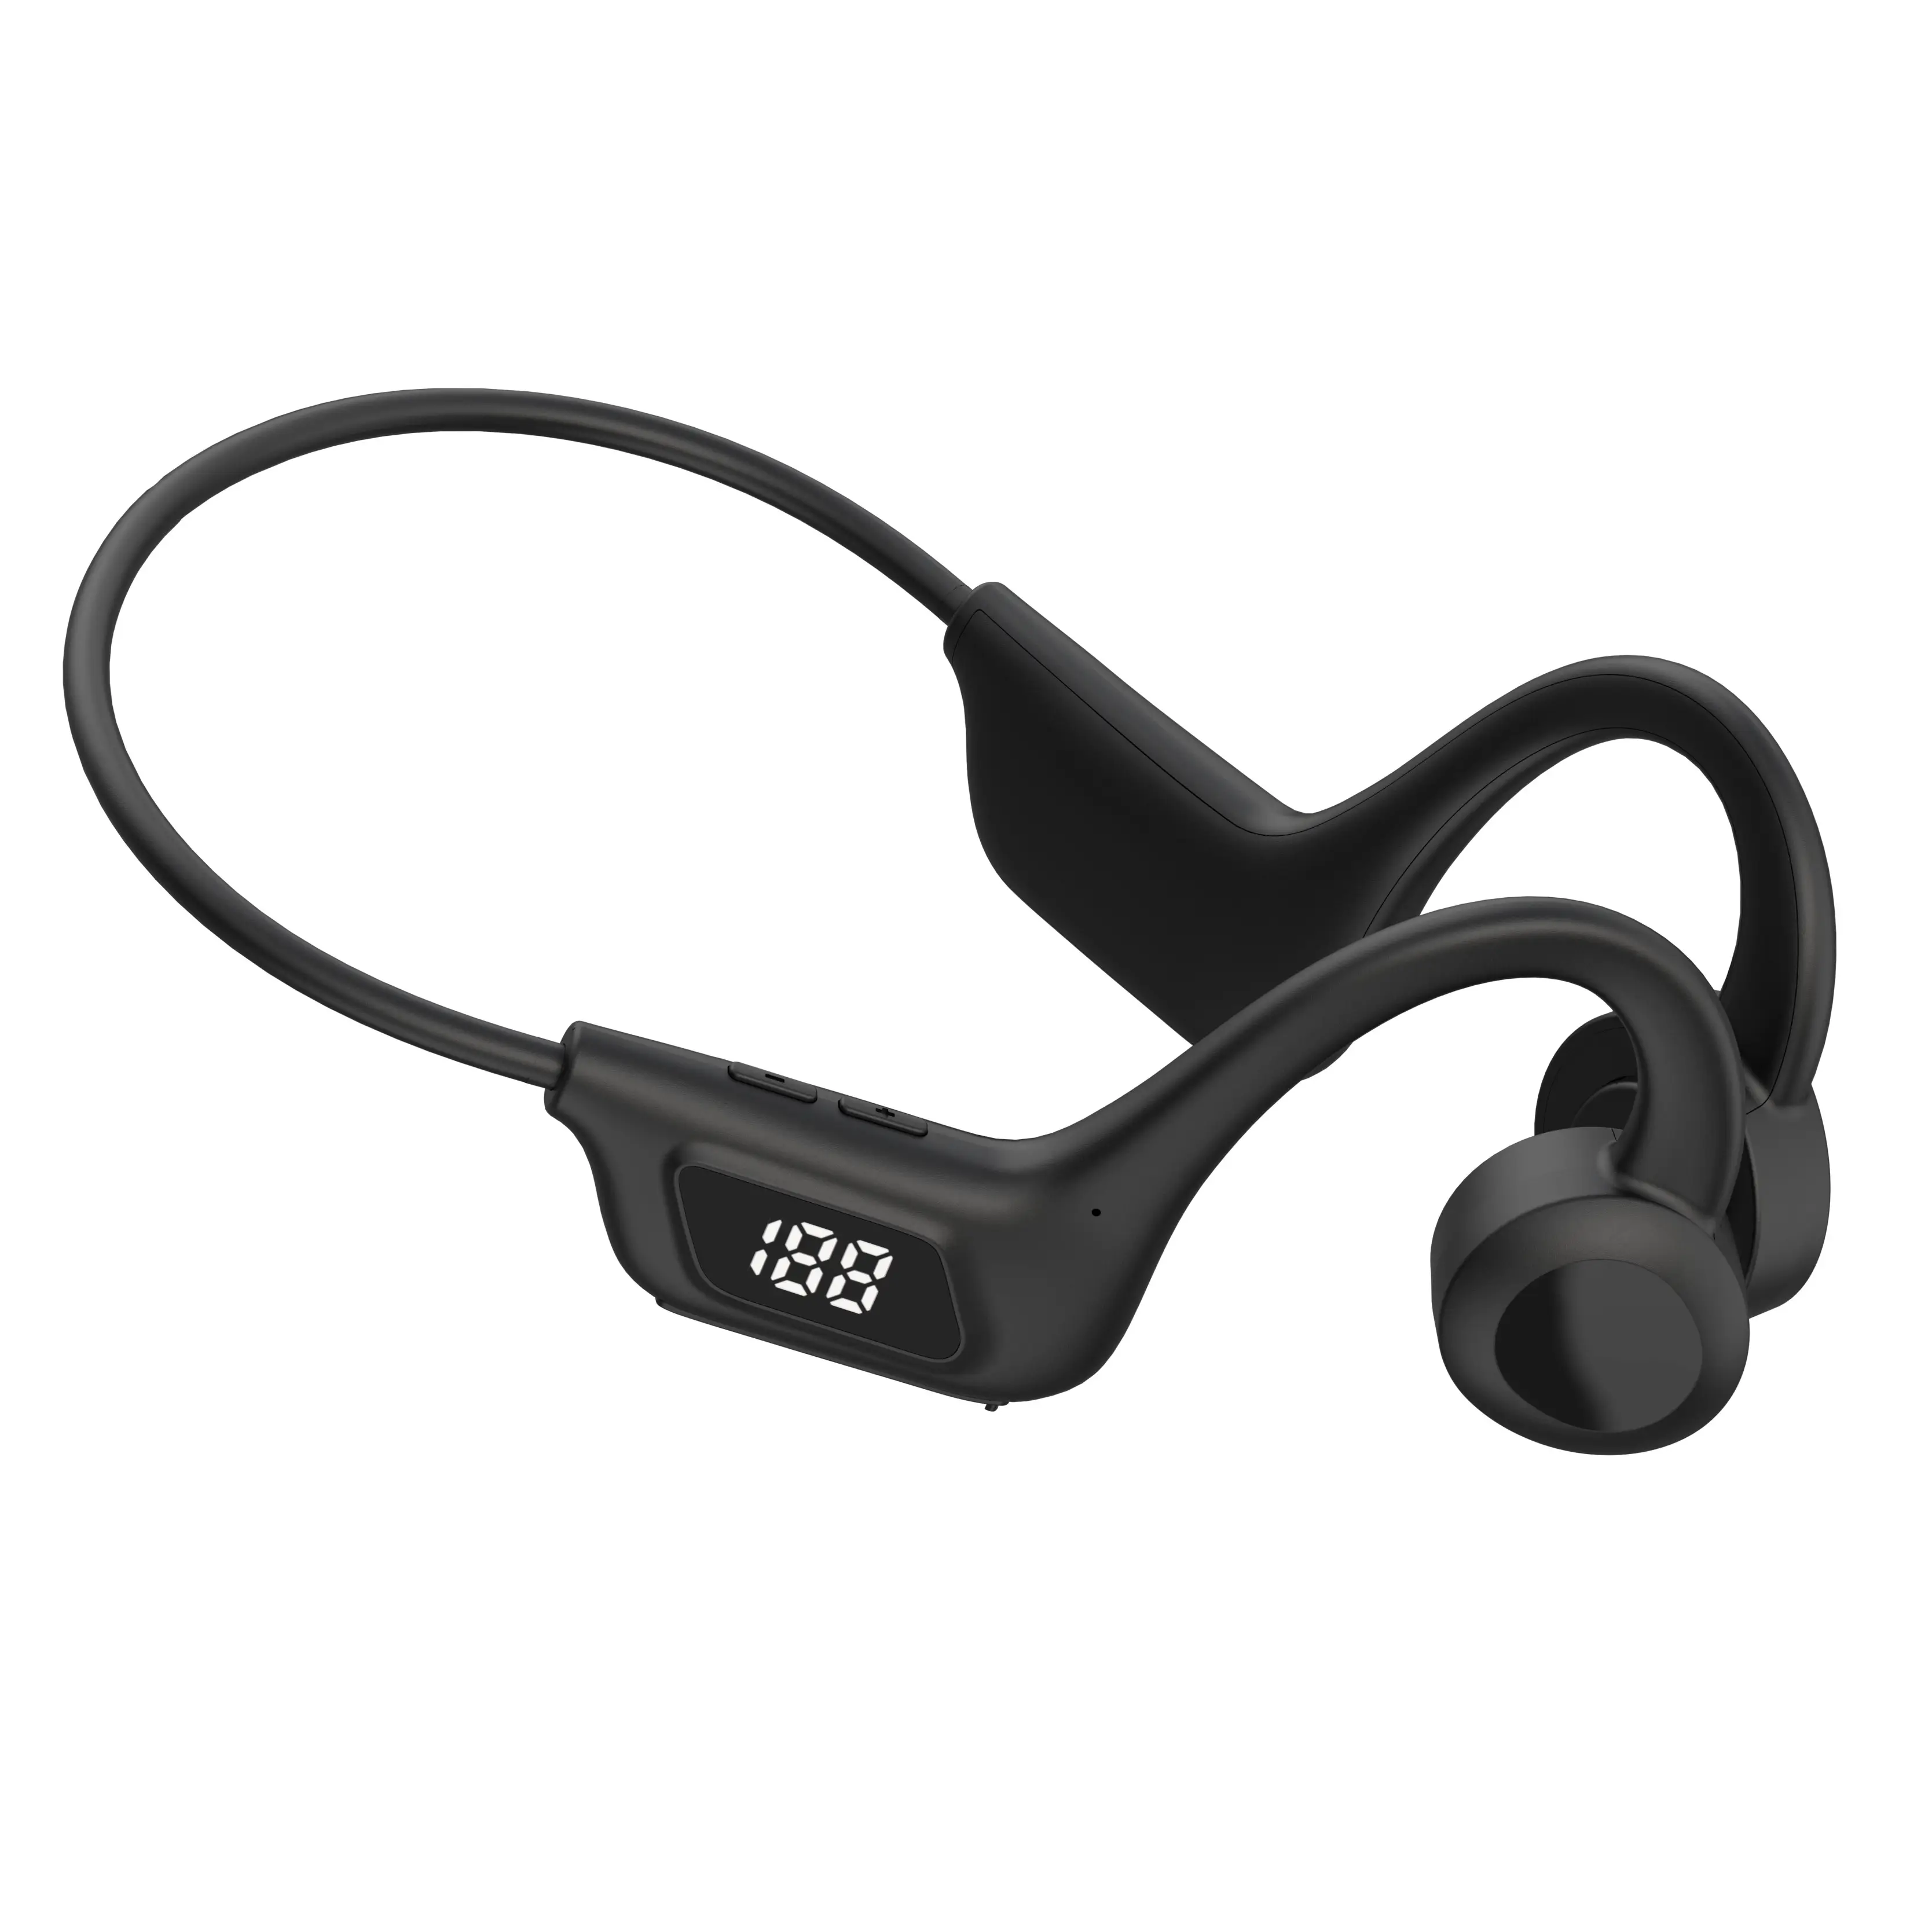 VG06 הולכה עצם אוזניות TWS אלחוטי ספורט אוזניות Fone Bluetooth אוזניות דיבורית עם מיקרופון עבור ריצה משחקי אוזניות